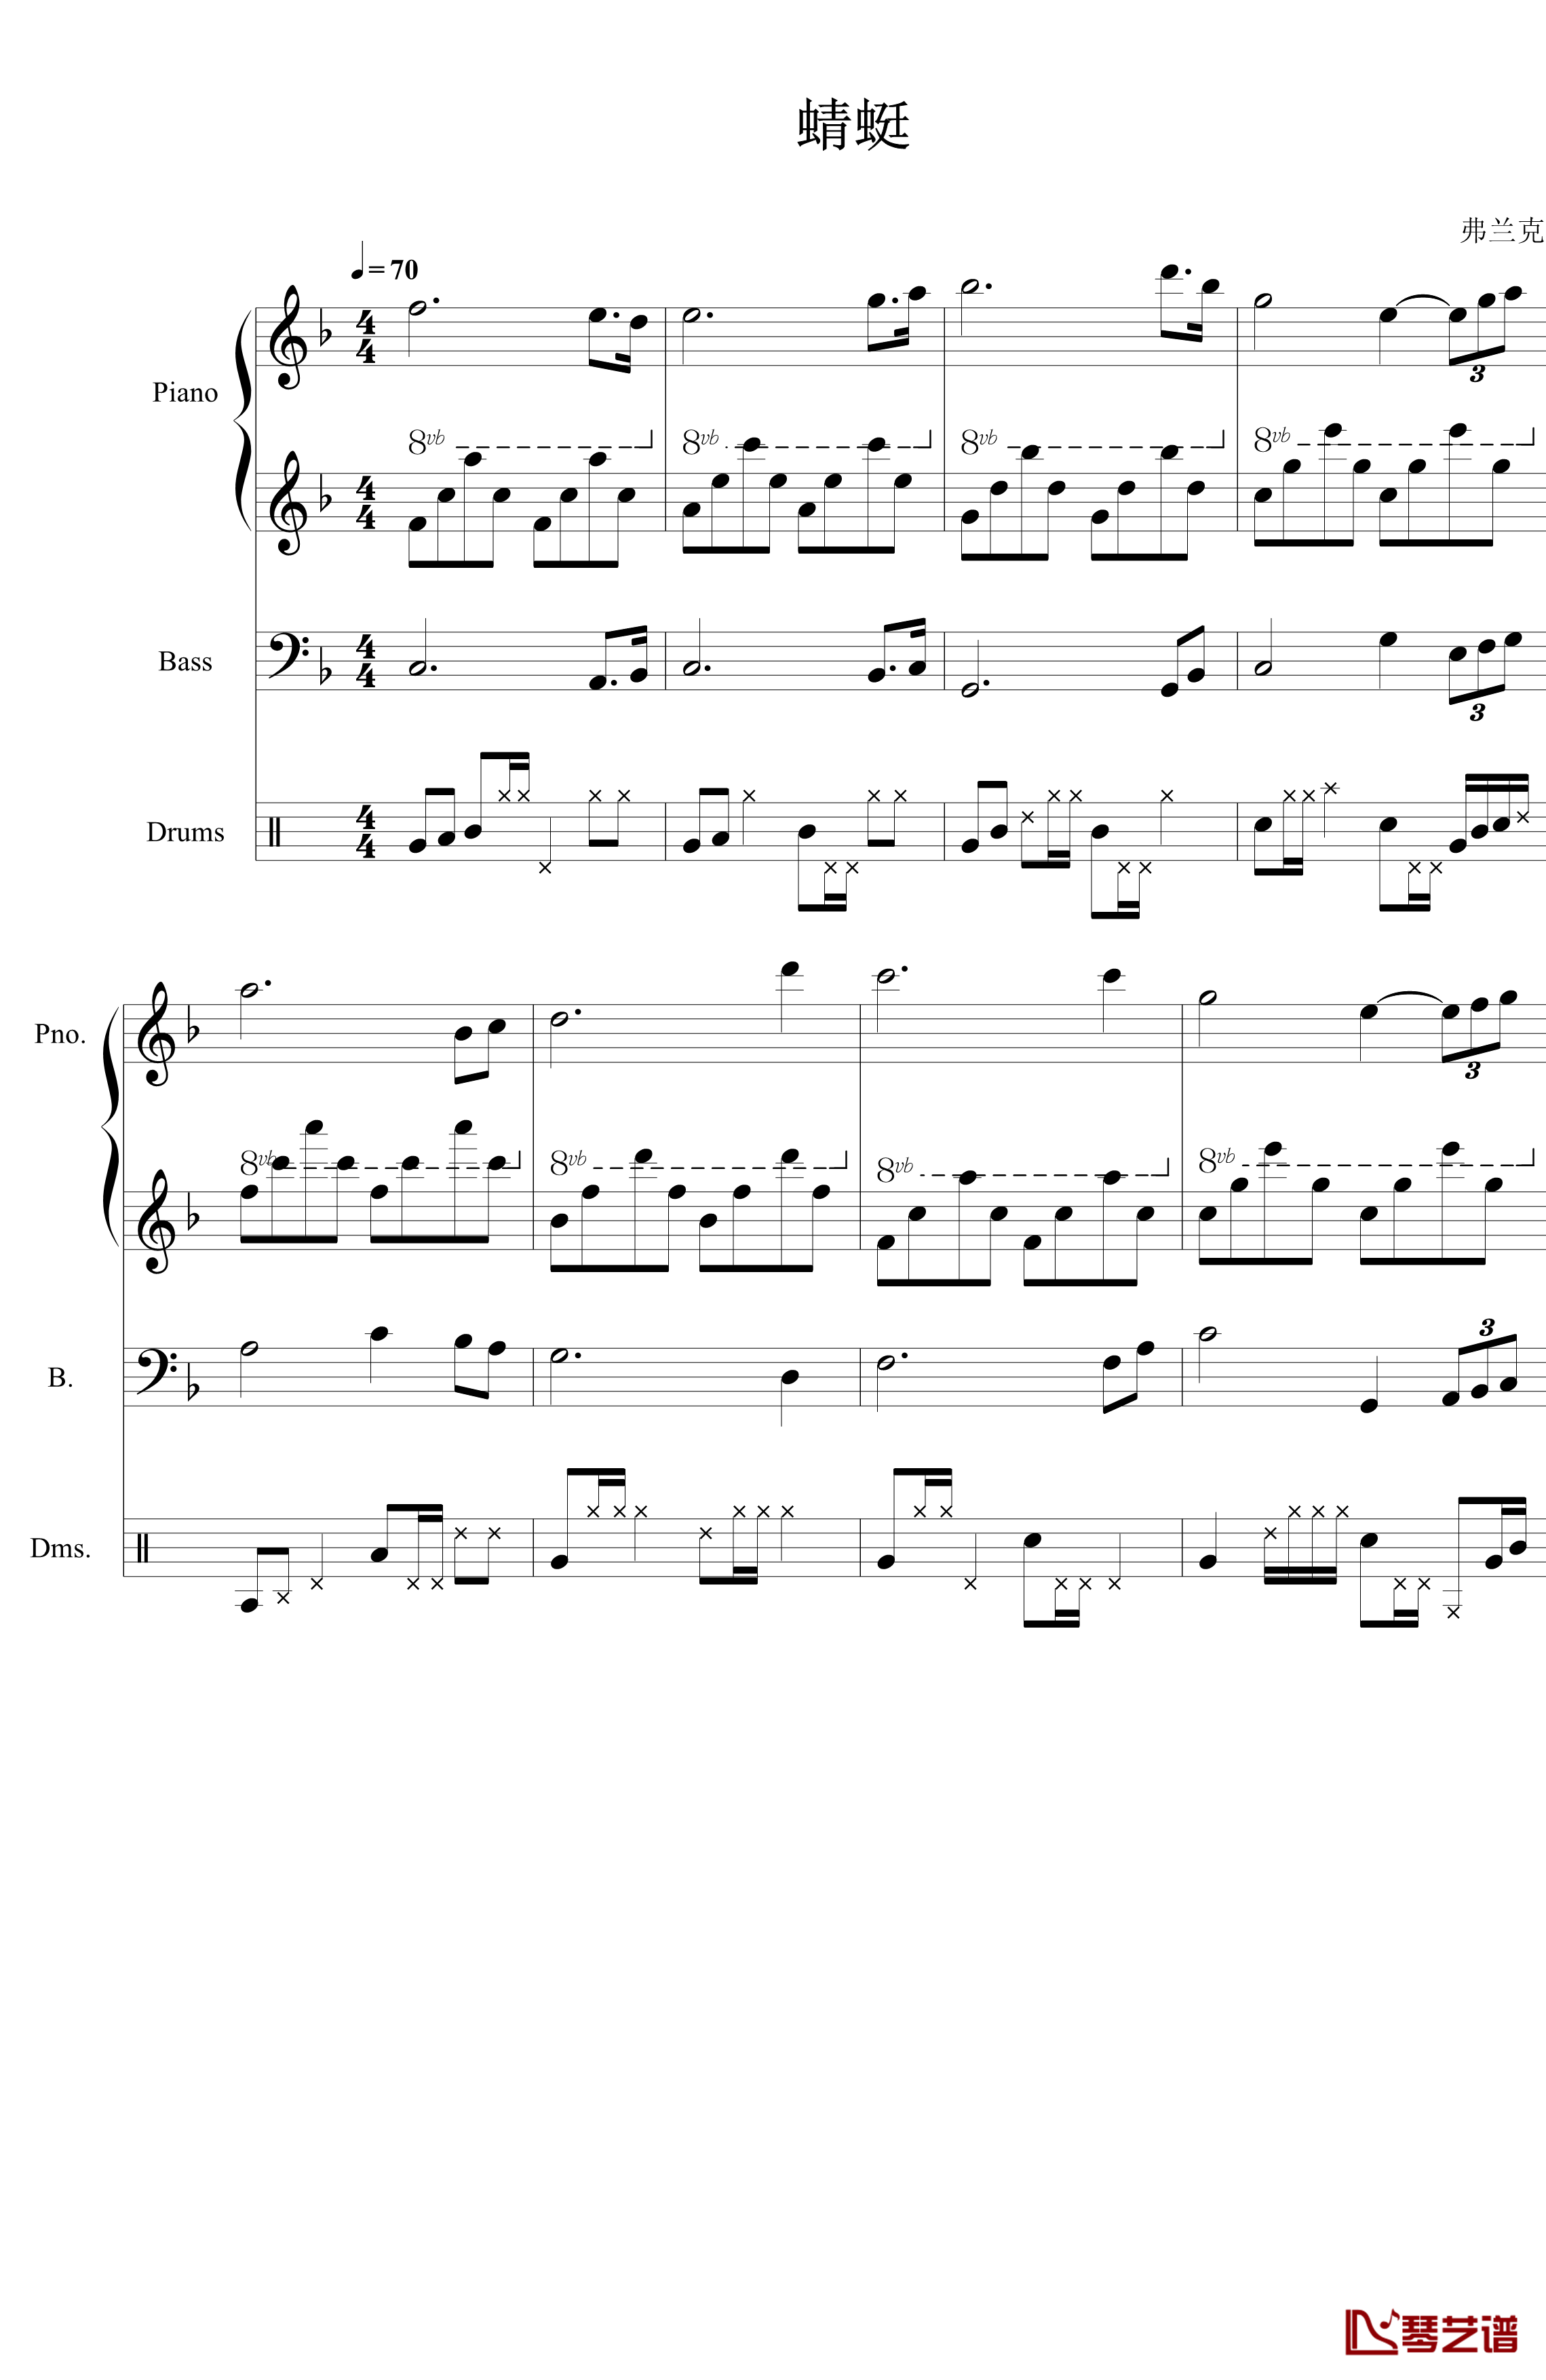 蜻蜓钢琴谱-伴奏版-弗兰克1